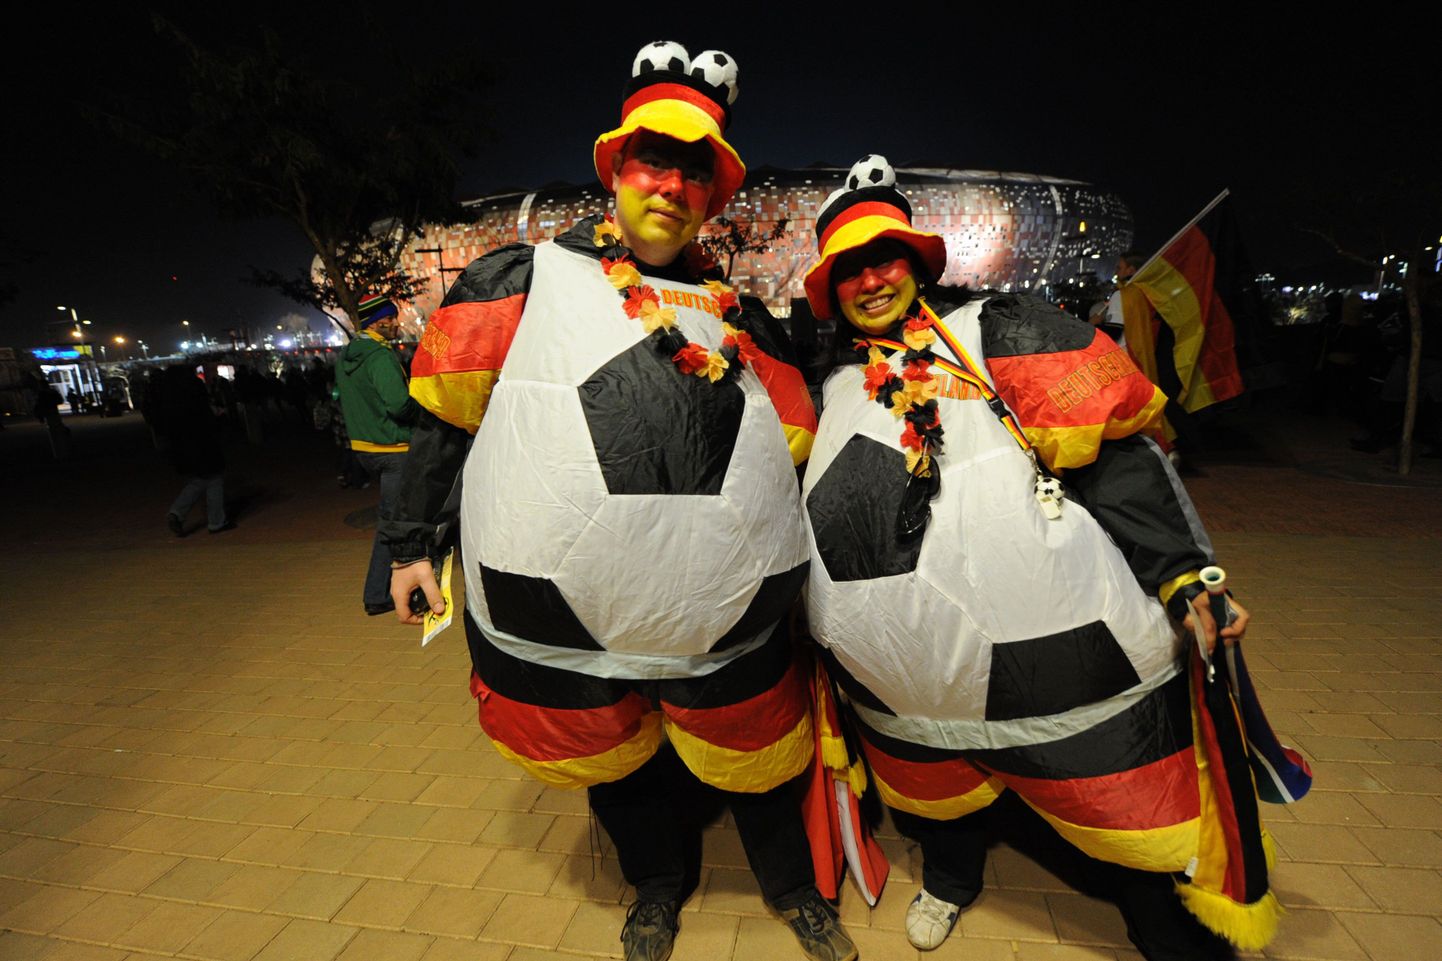 Saksamaa jalgpallikoondise poolehoidjad.